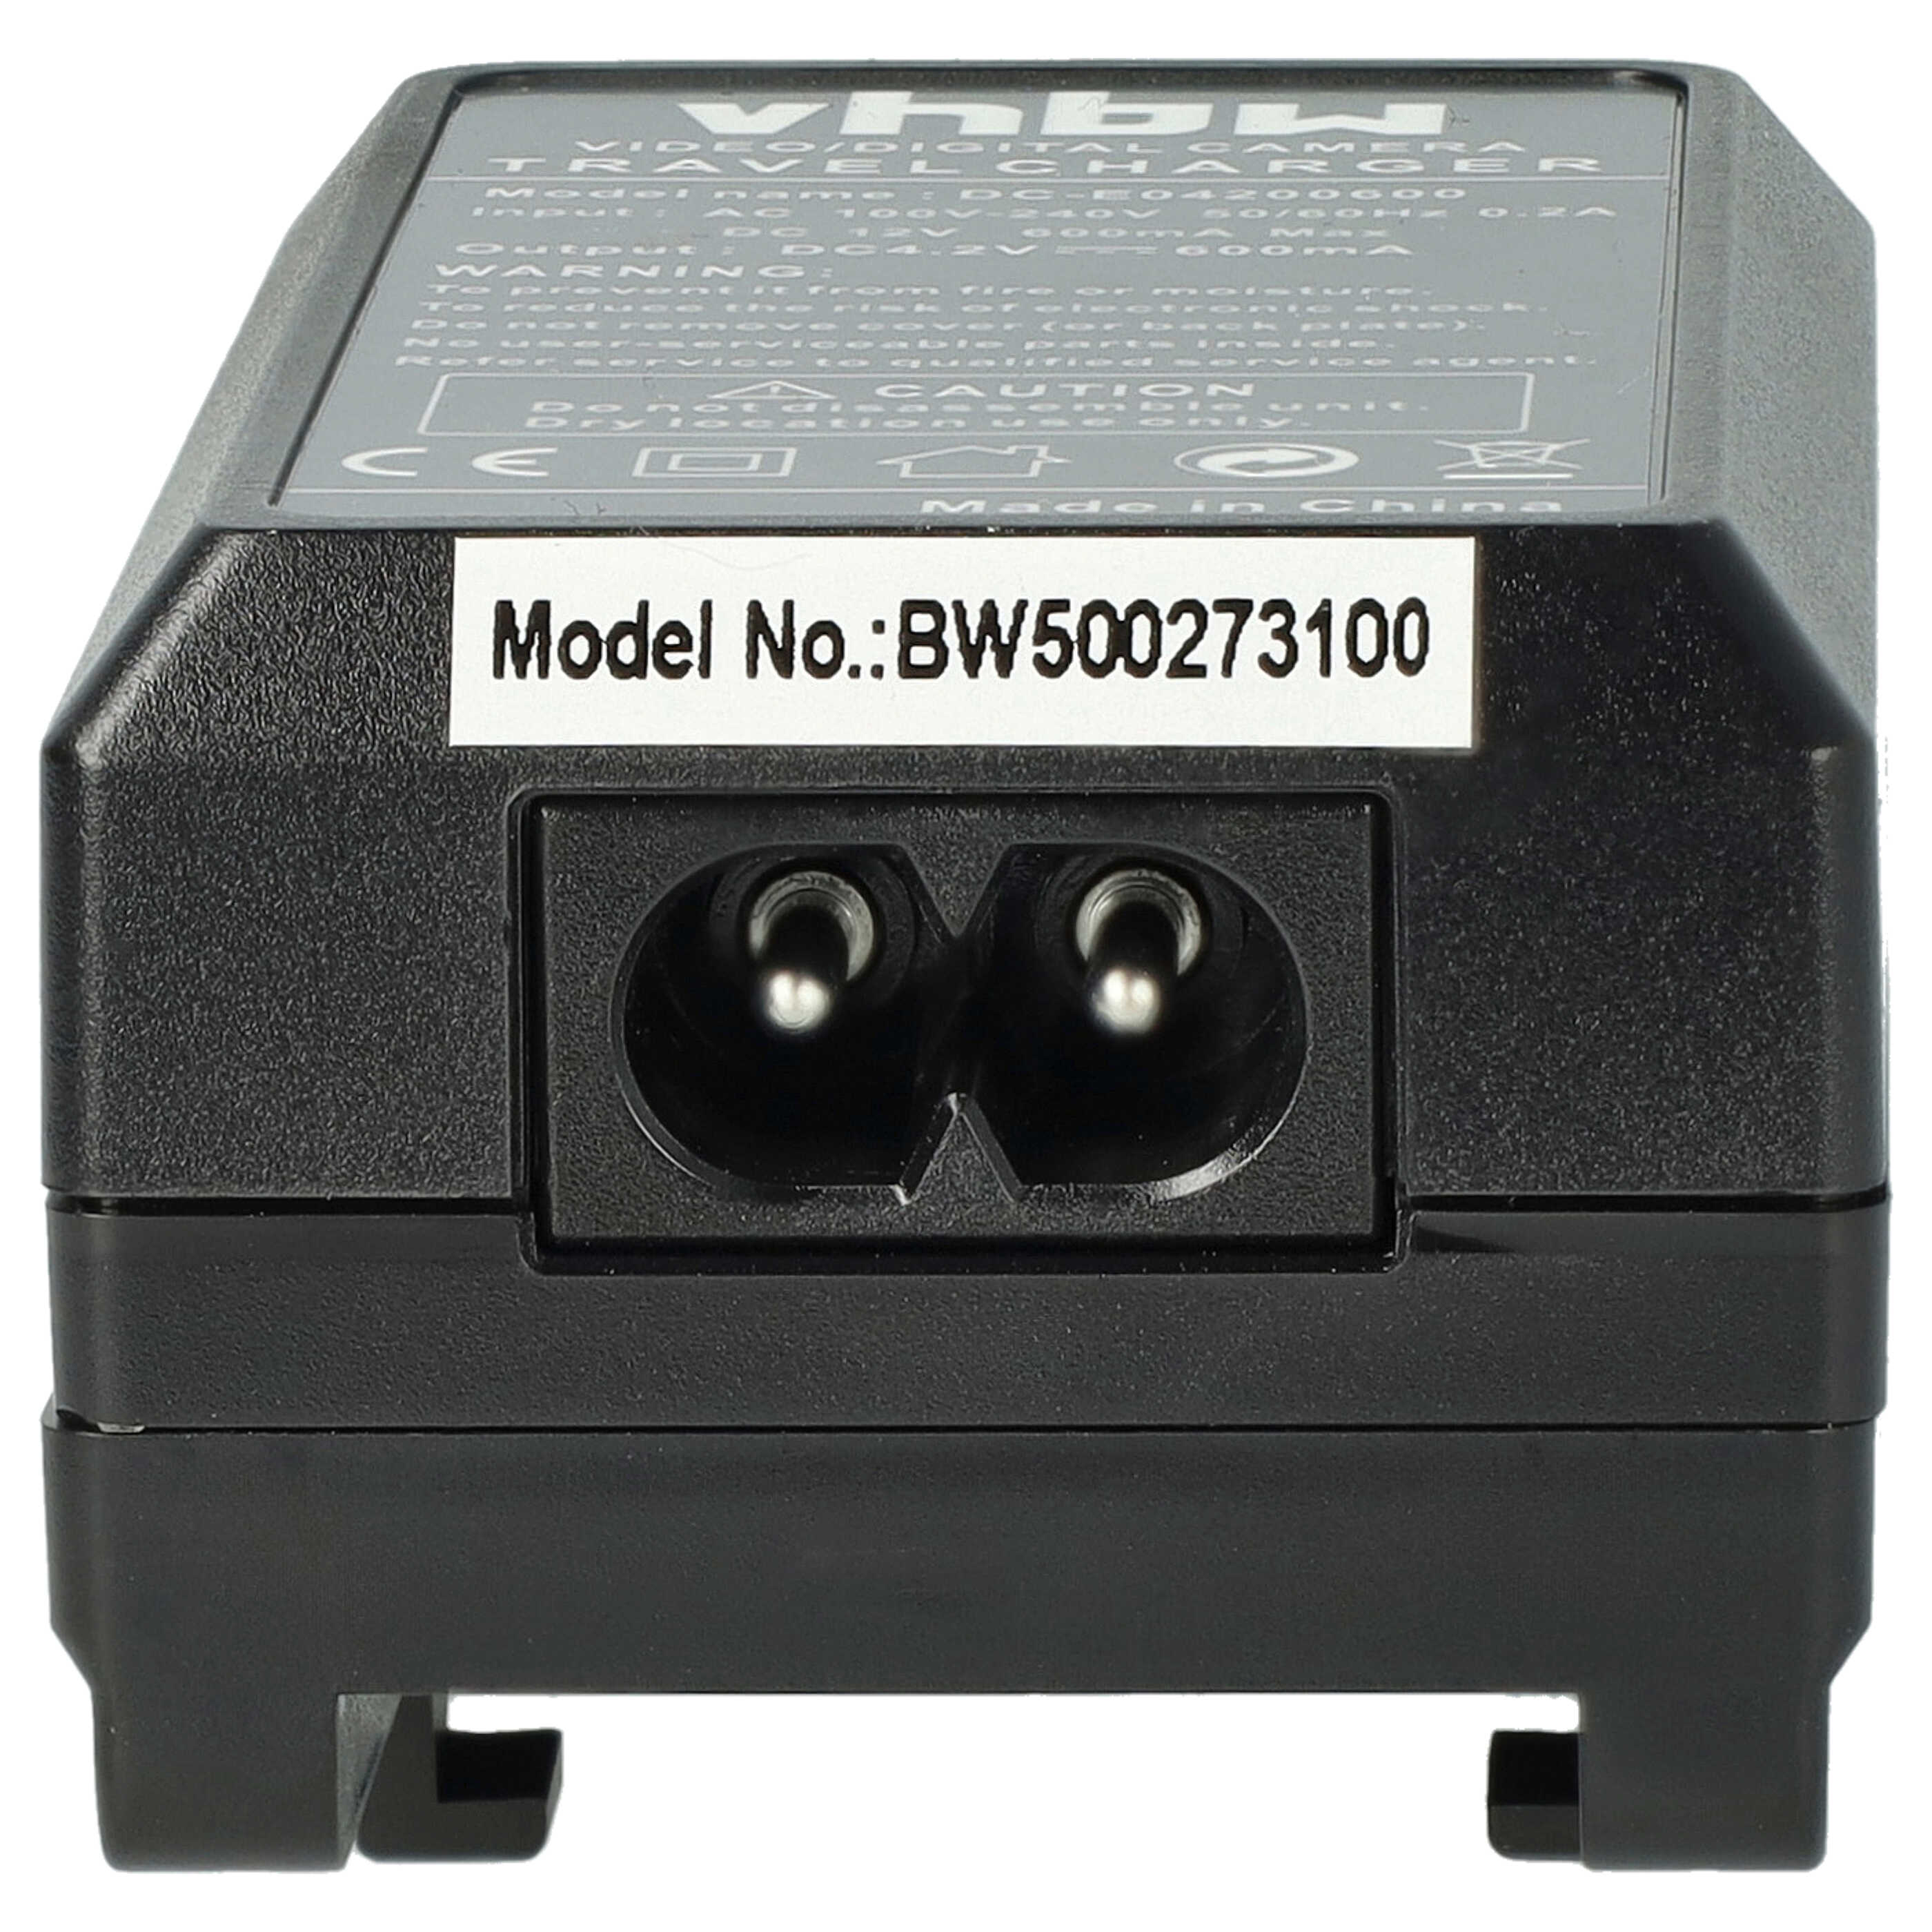 Caricabatterie + adattatore da auto per fotocamera Sanyo - 0,6A 4,2V 88,5cm